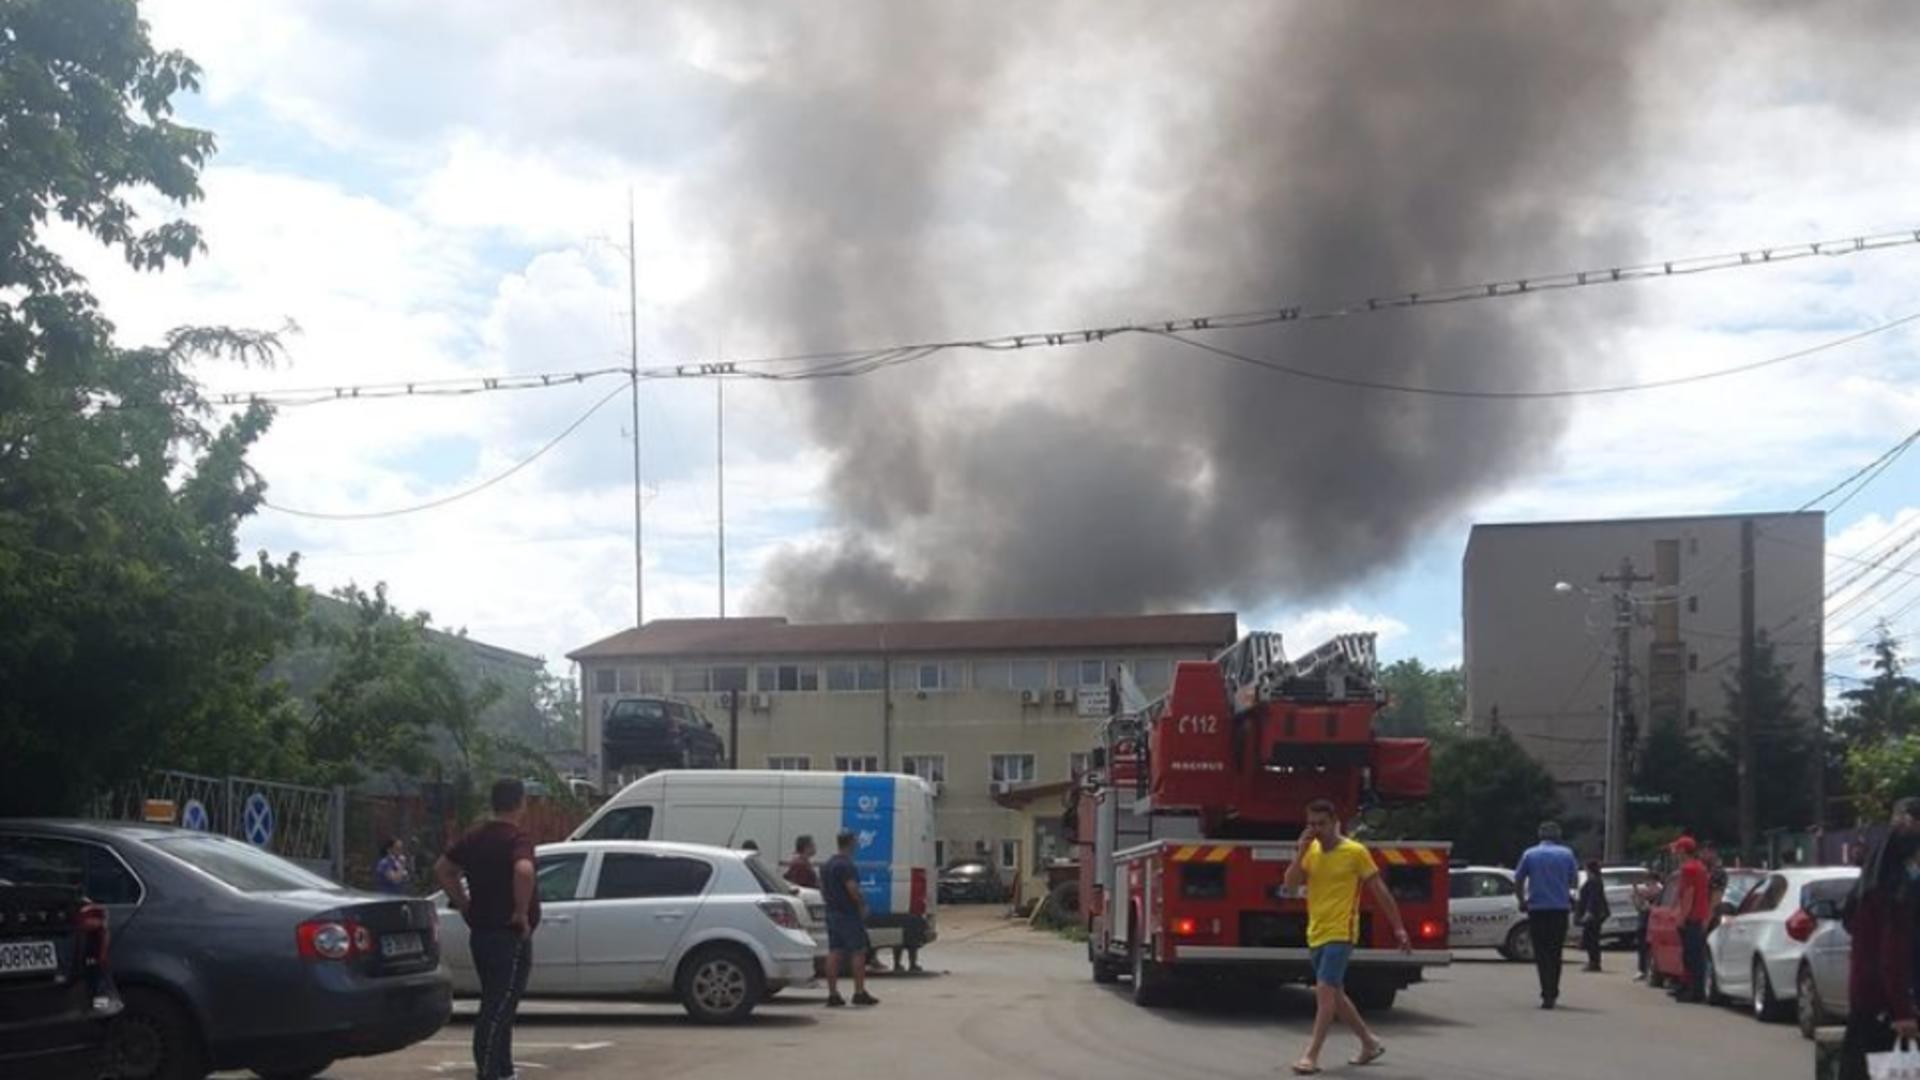 Fum gros din cauza incendiului de la depozitul de mașini vechi din Militari Foto: INQUAM/Octav Ganea și Facebook